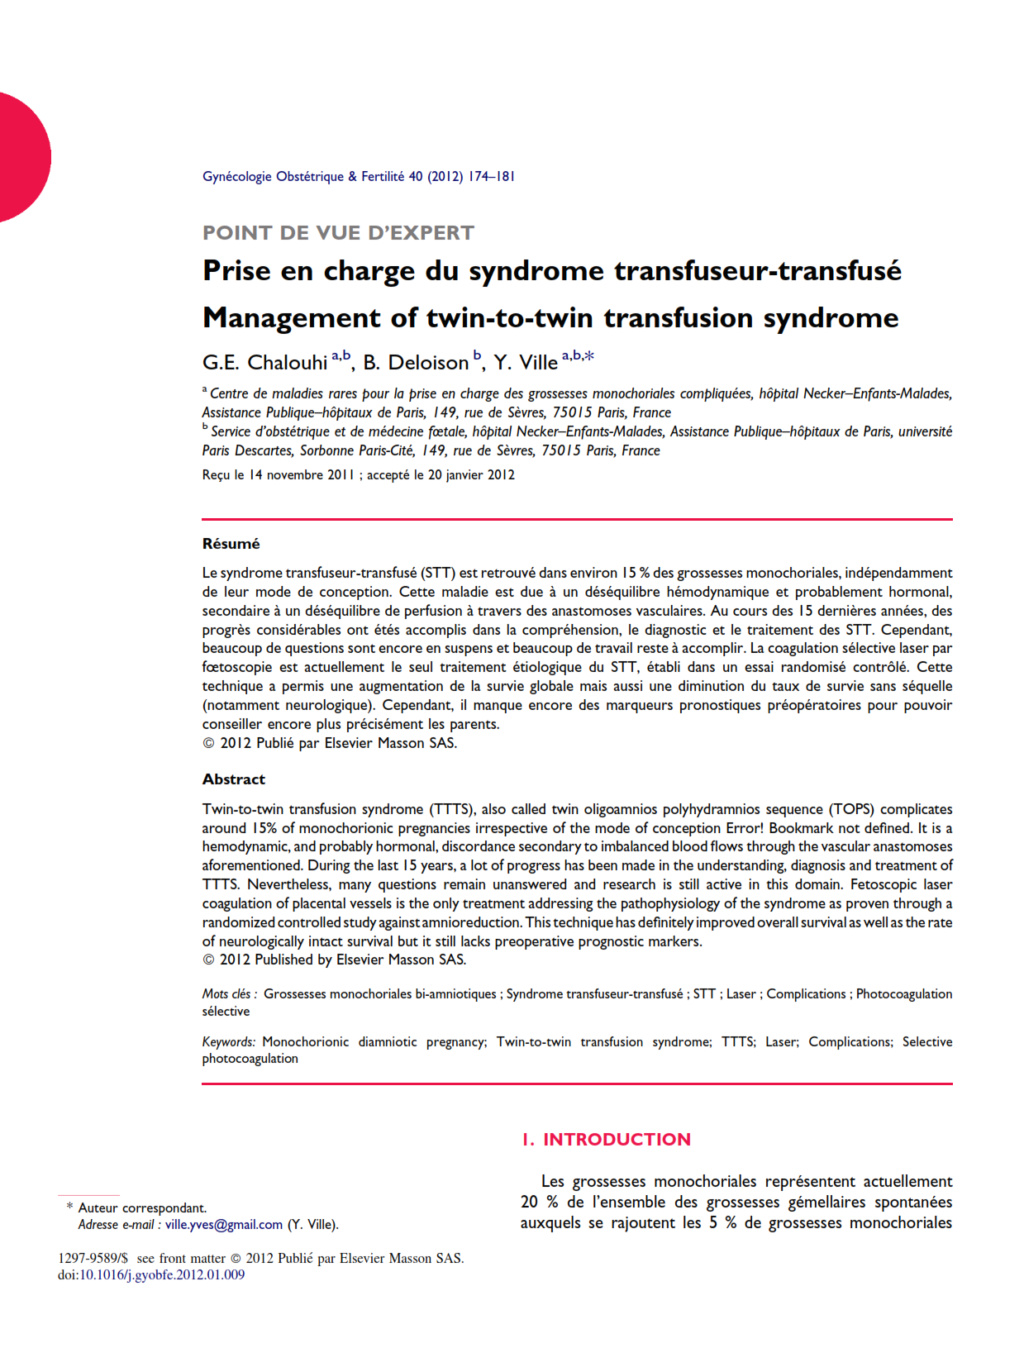 Prise en charge du syndrome transfuseur-transfusé Chalou10